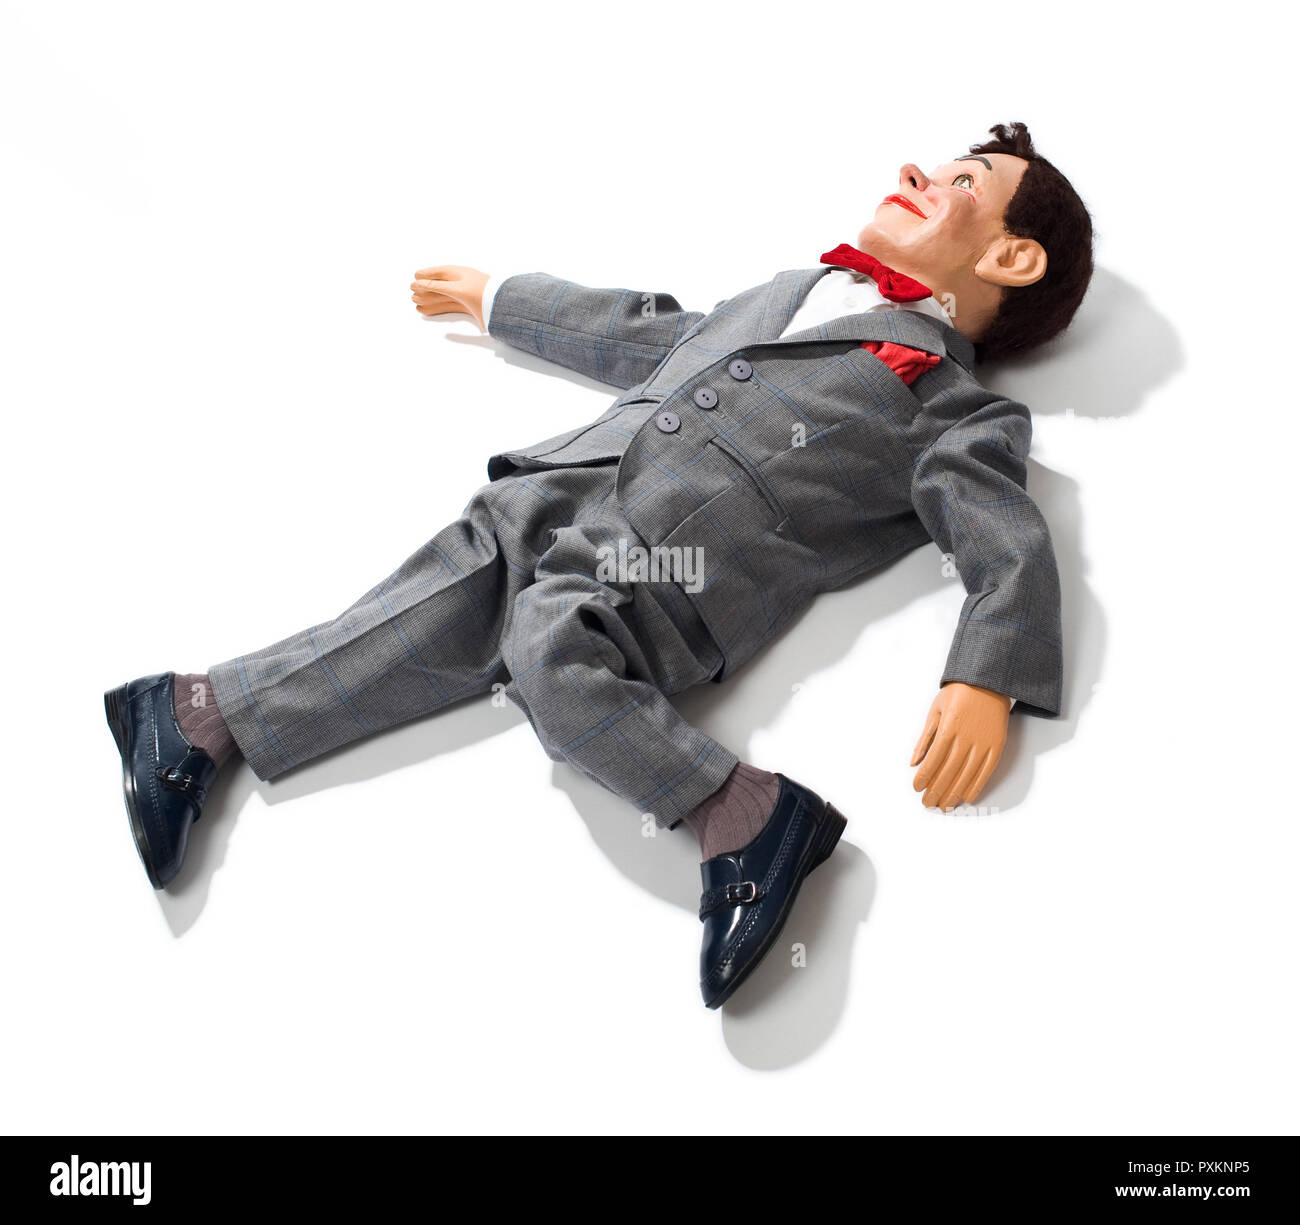 Un mannequin ventriloquiste posé sur le sol Banque D'Images